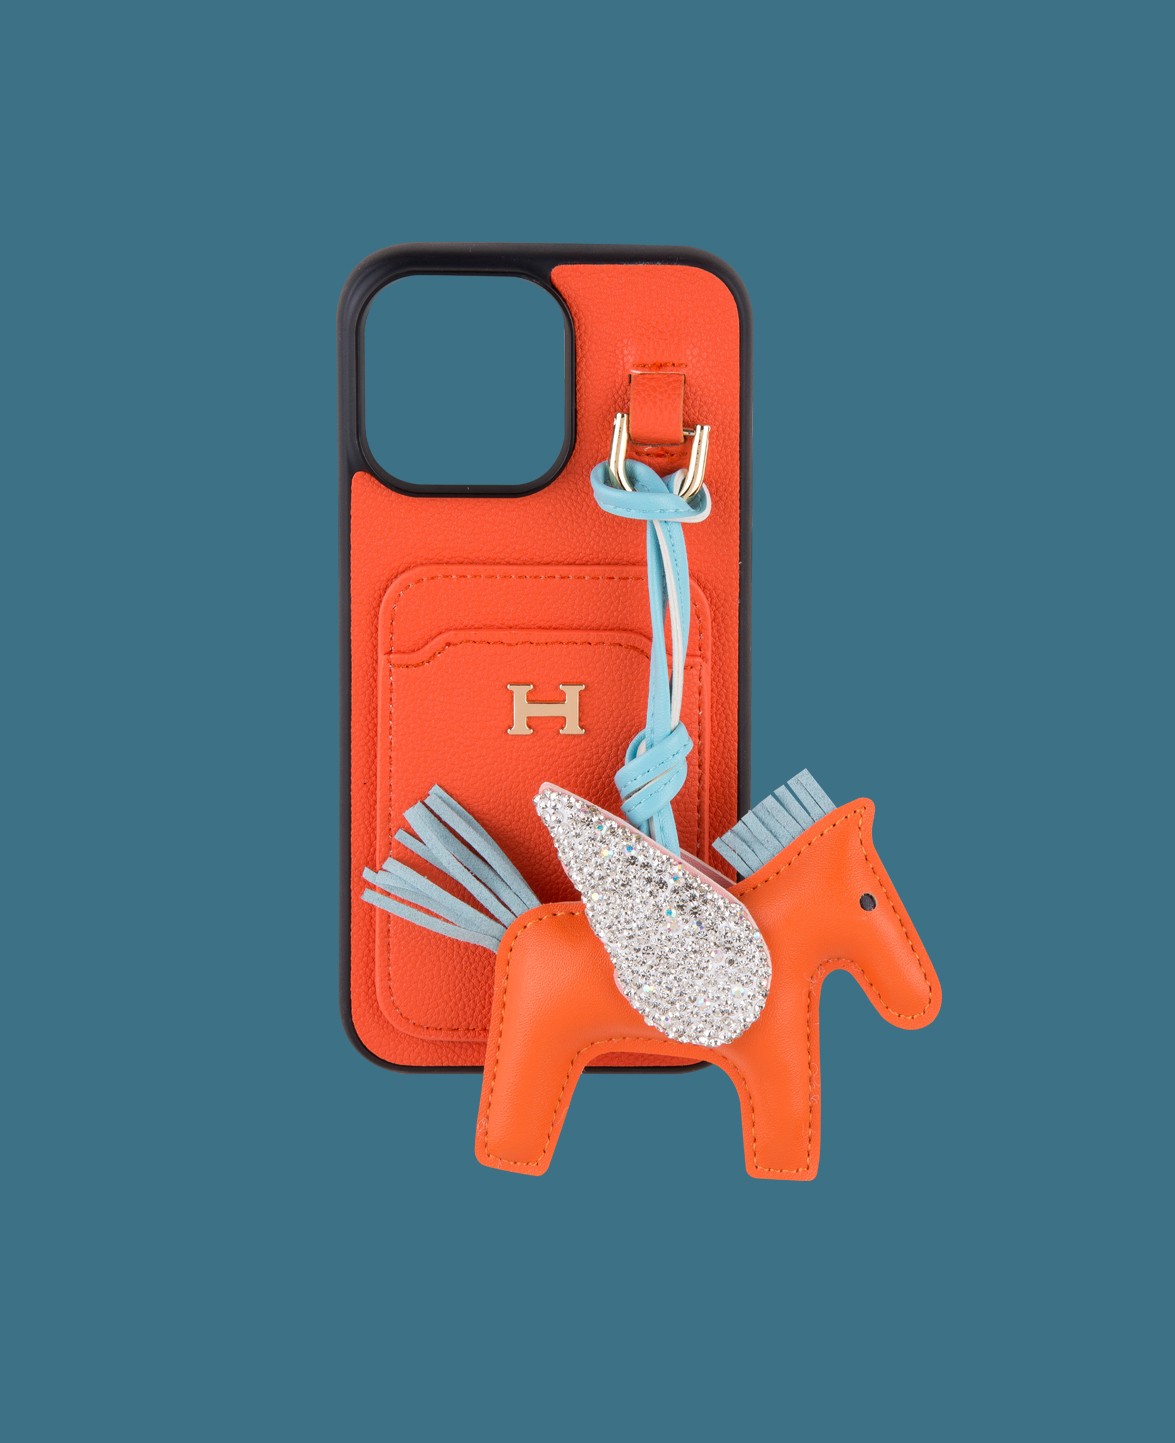 Turuncu Kartlıklı Oyuncaklı Telefon Kılıfı - DK182 - iPhone 14 Promax